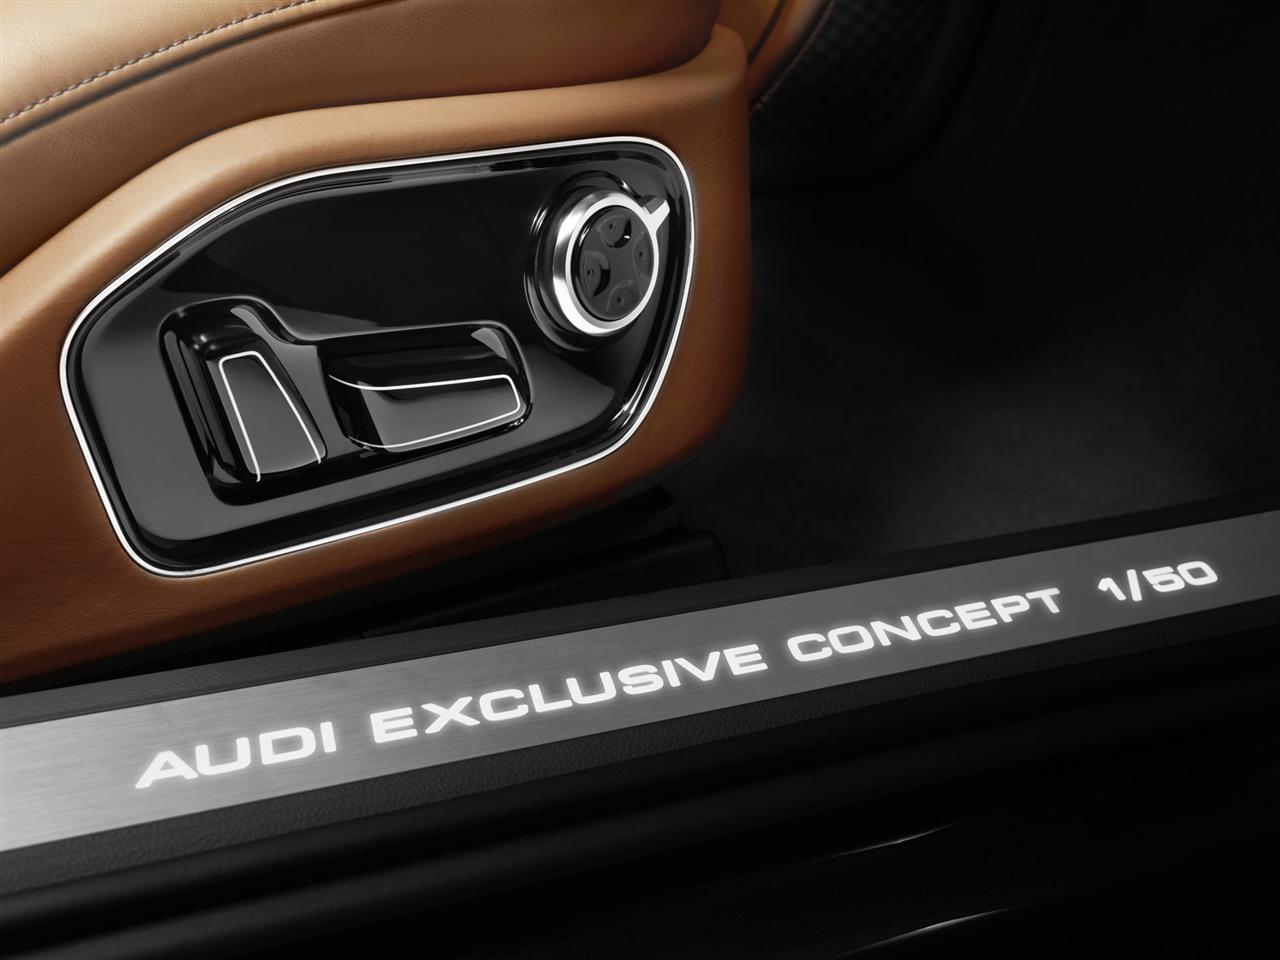 2013 Audi A8 Exclusive Concept